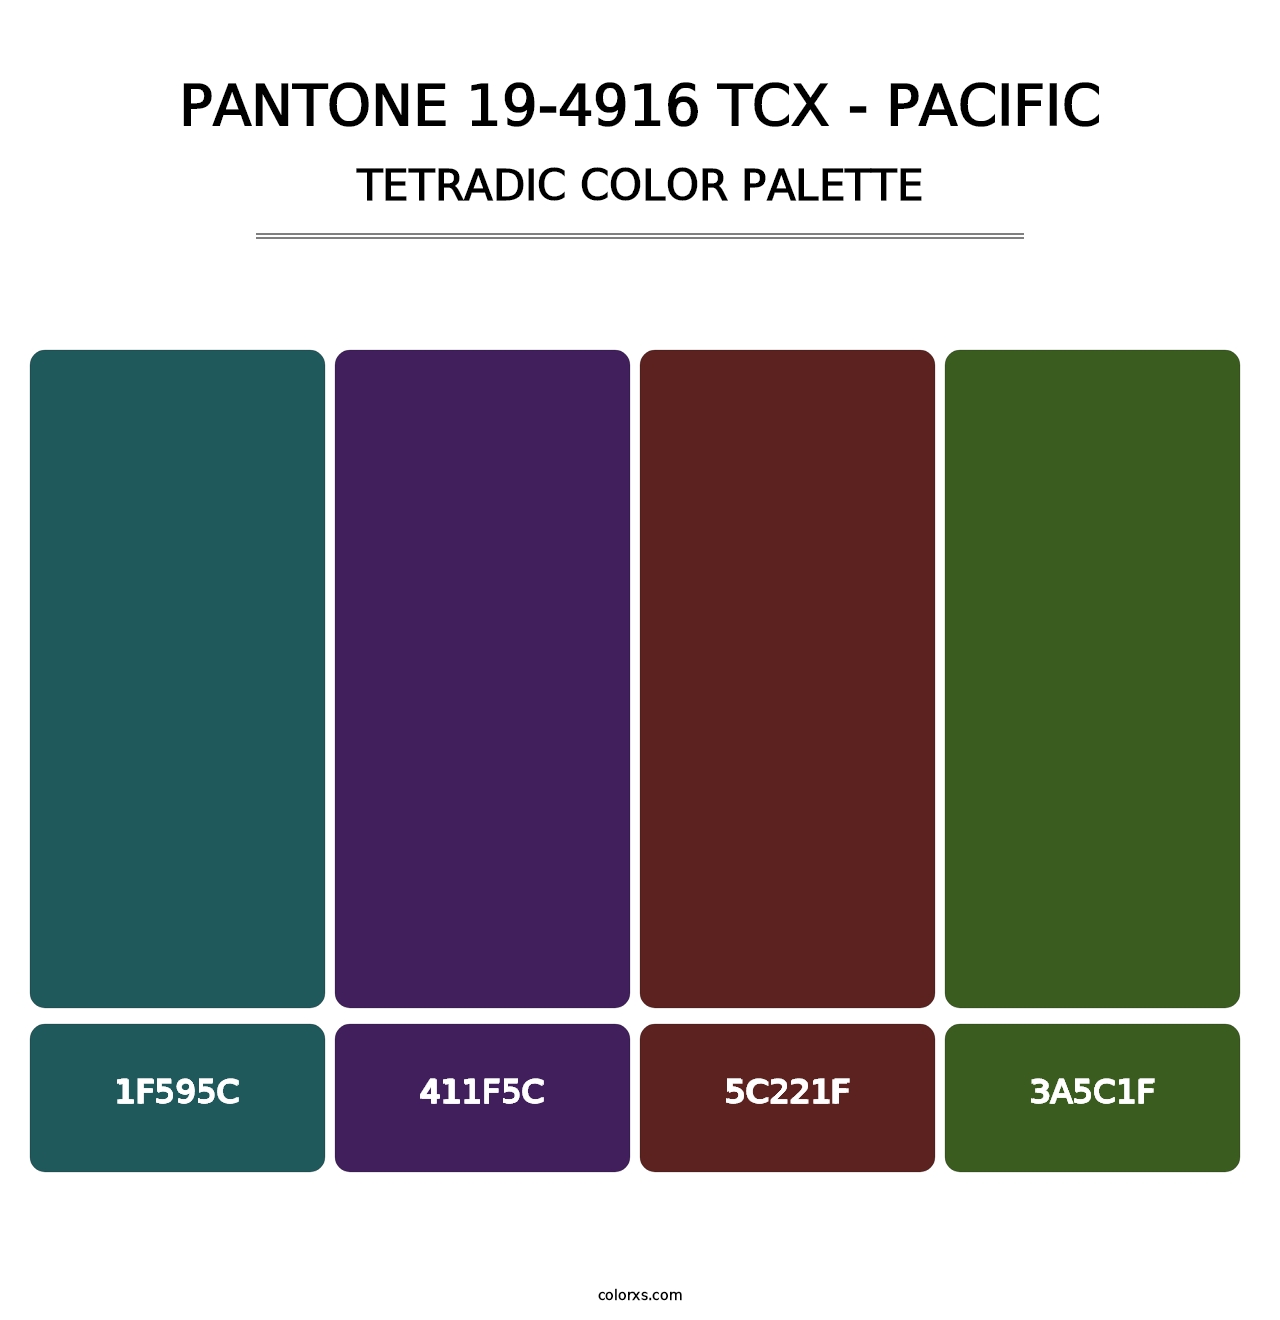 PANTONE 19-4916 TCX - Pacific - Tetradic Color Palette